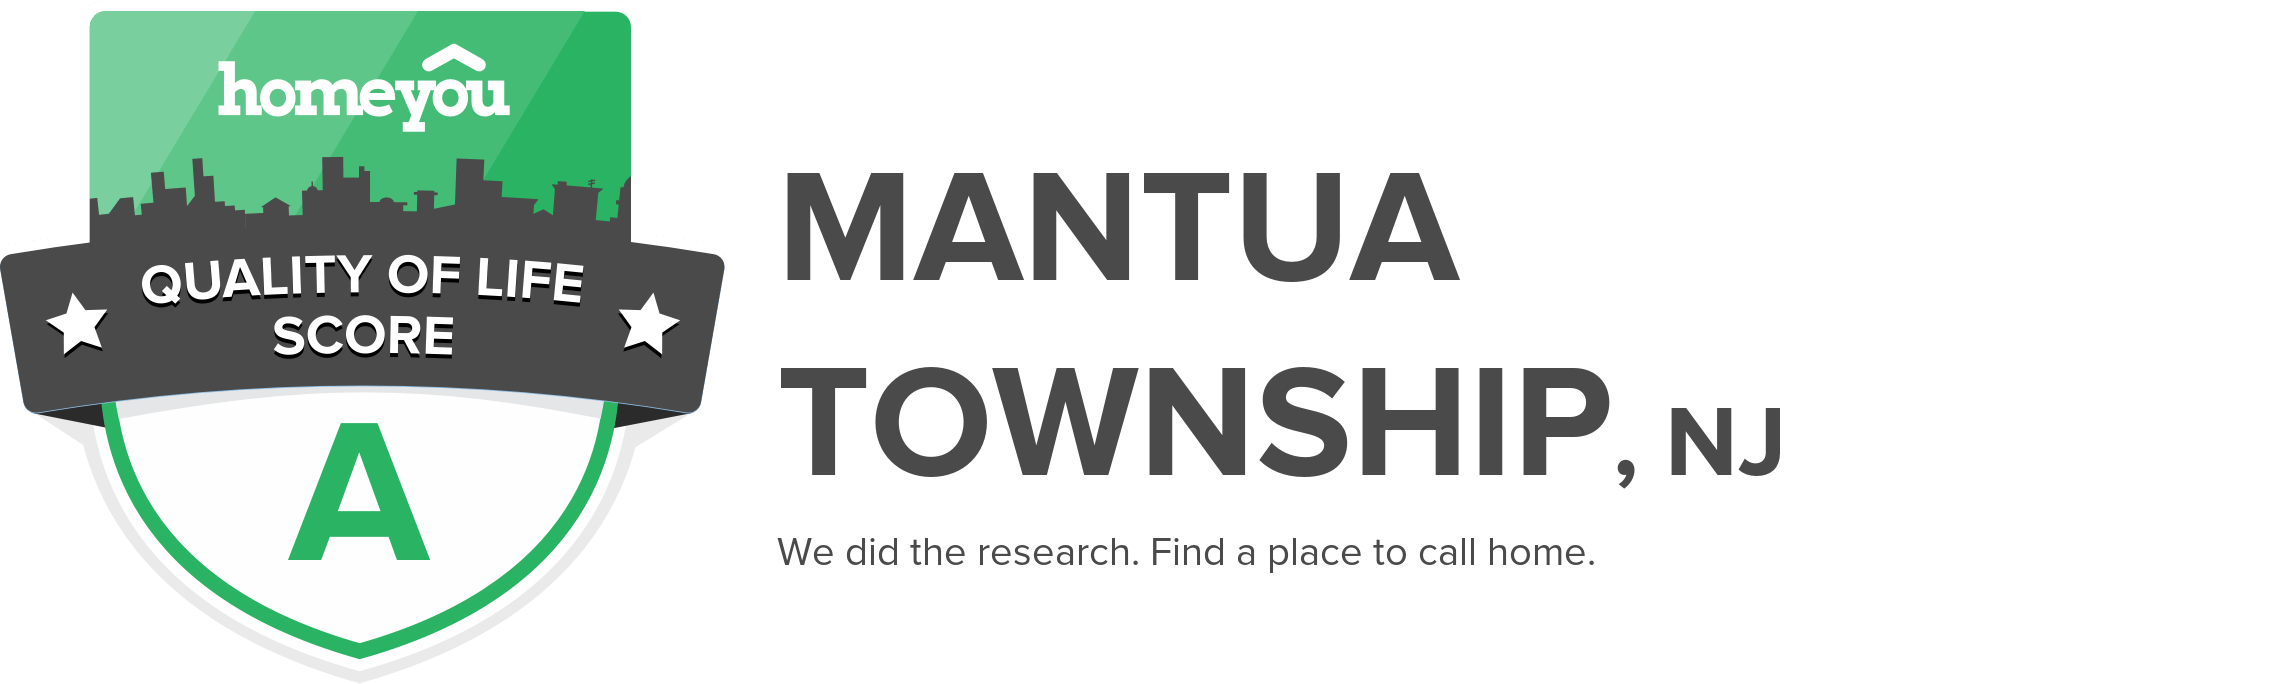 Mantua Township, NJ